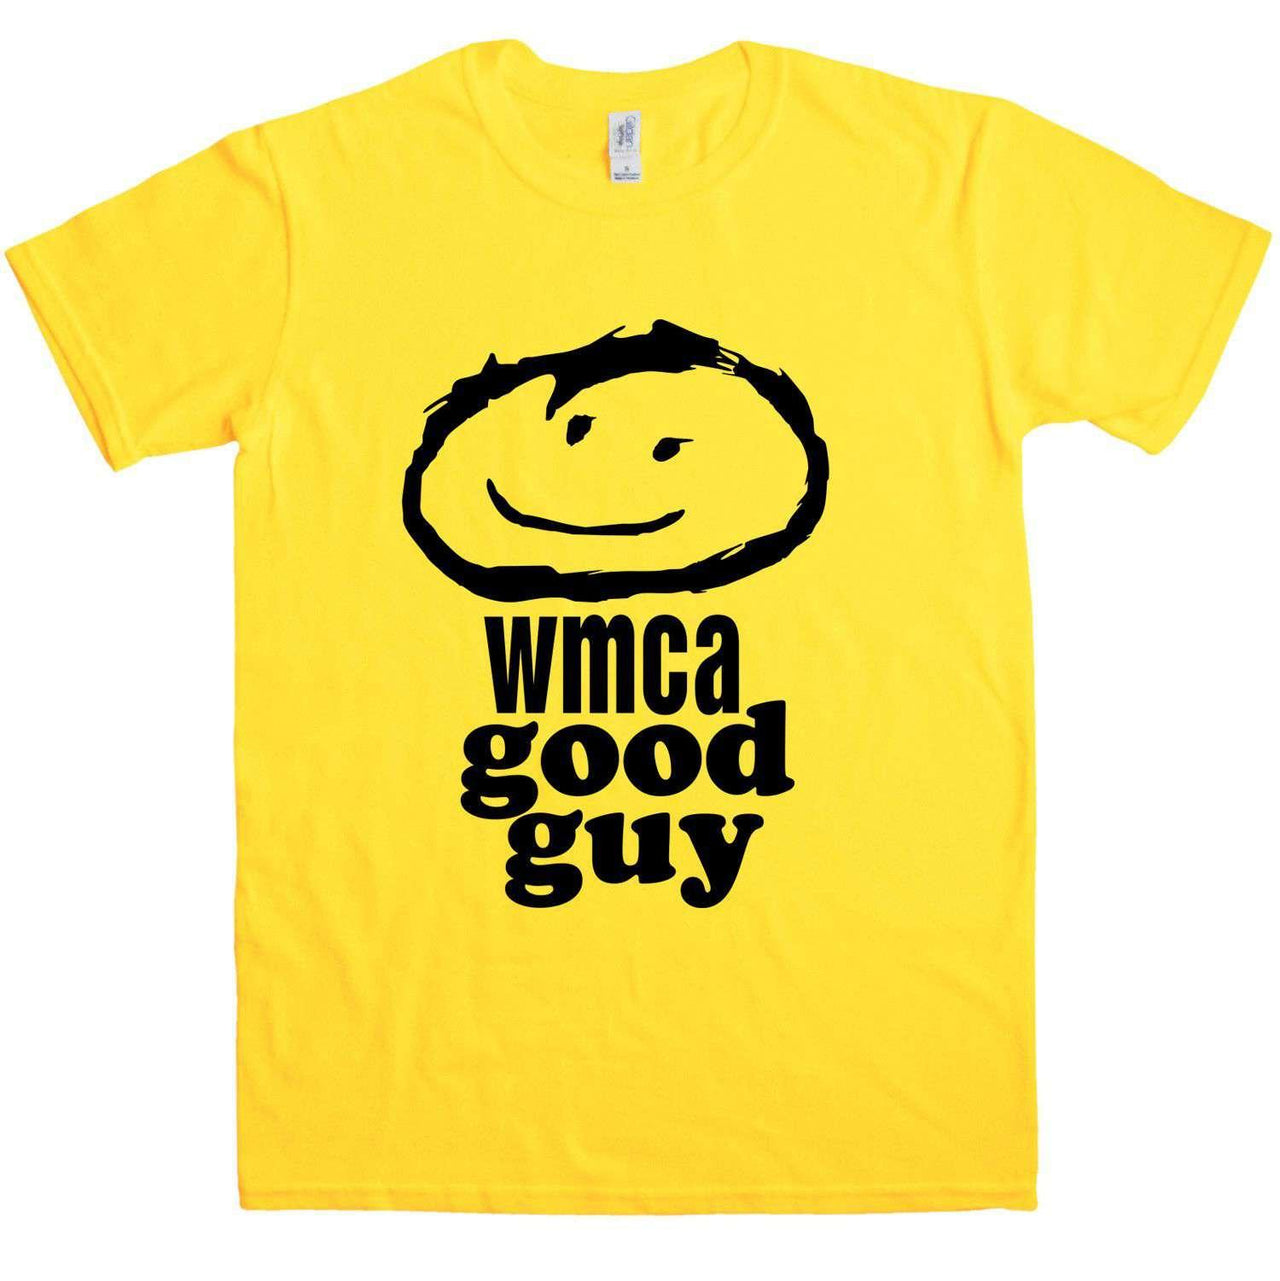 WMCA Good Guy T-Shirt For Men As Worn By Mick Jagger 8Ball